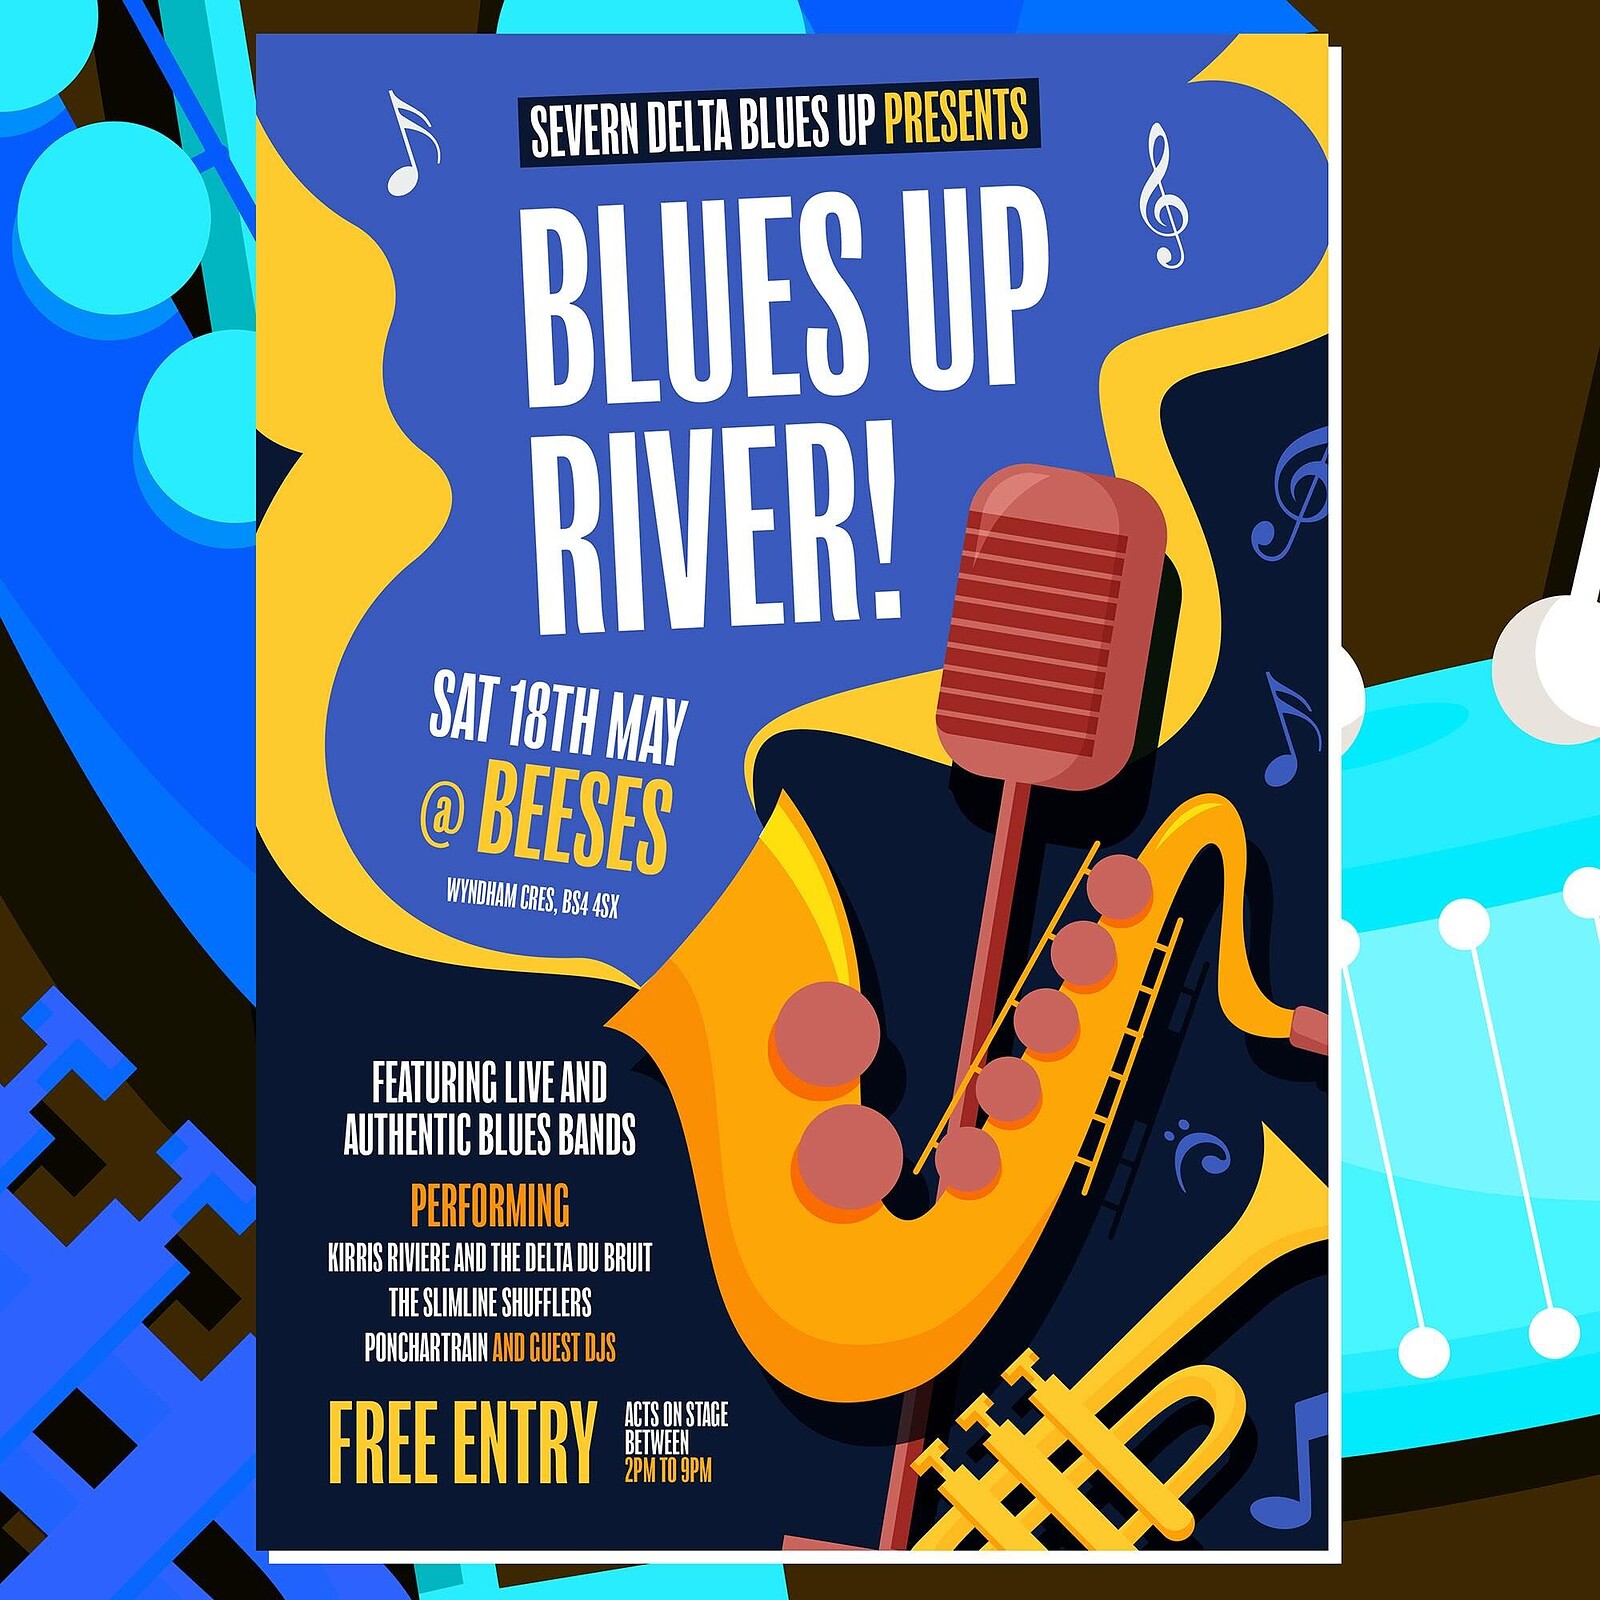 Blues Up River at Beeses